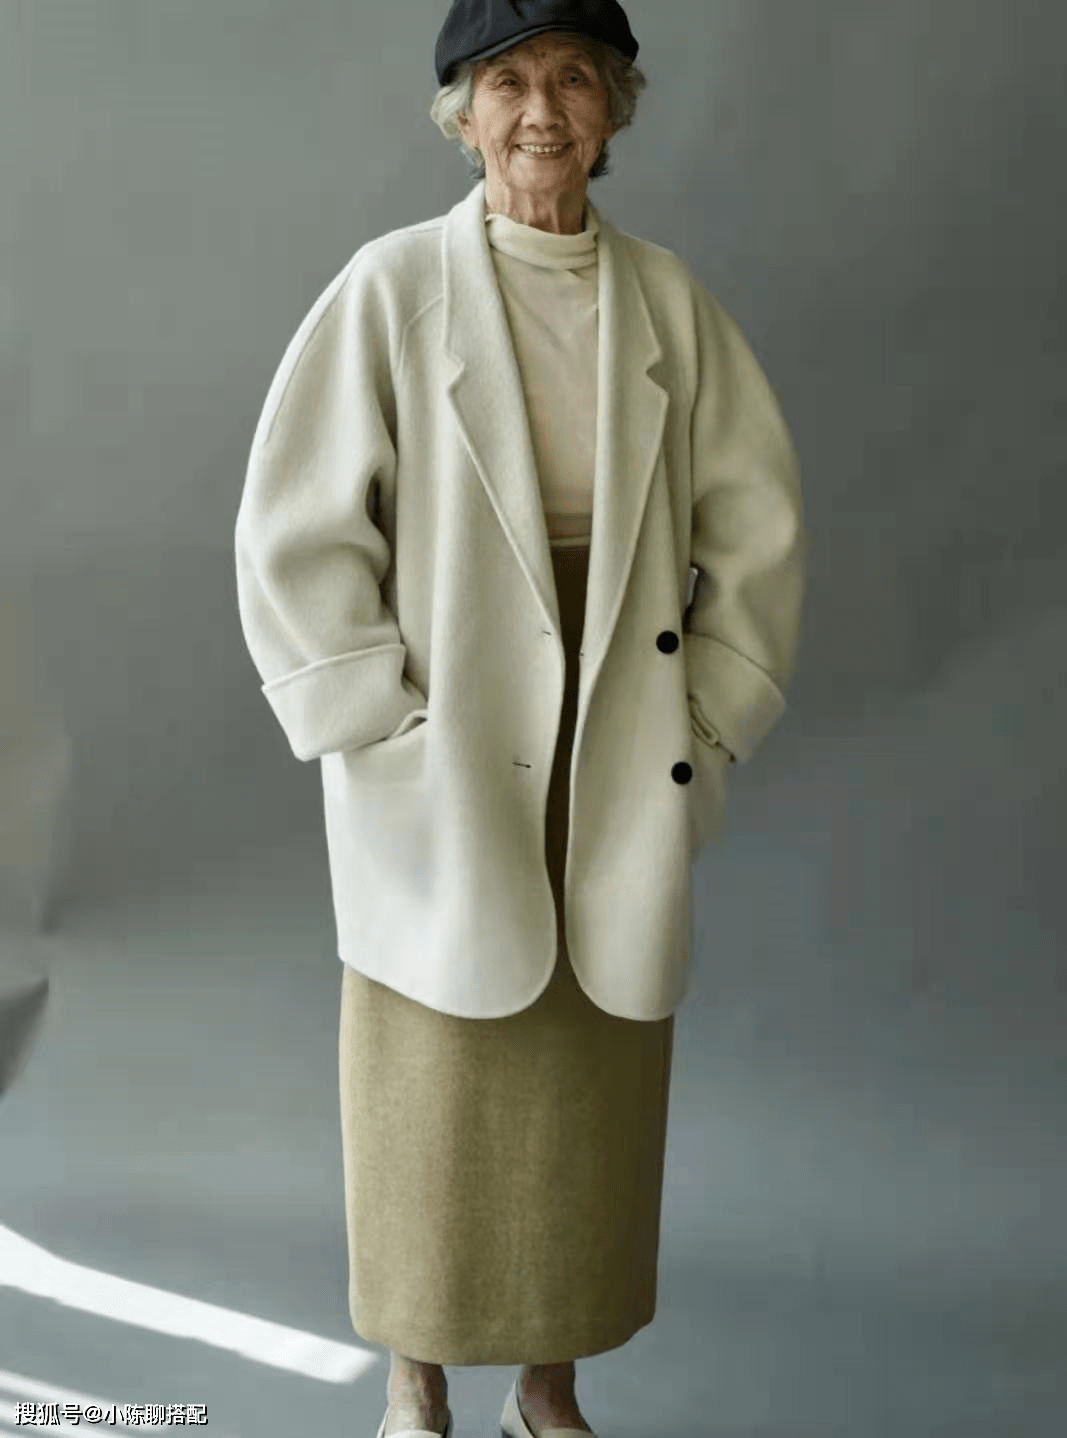 显得 这是我见过最有风骨的奶奶，90岁打扮简洁素净，比时尚奶奶还优雅